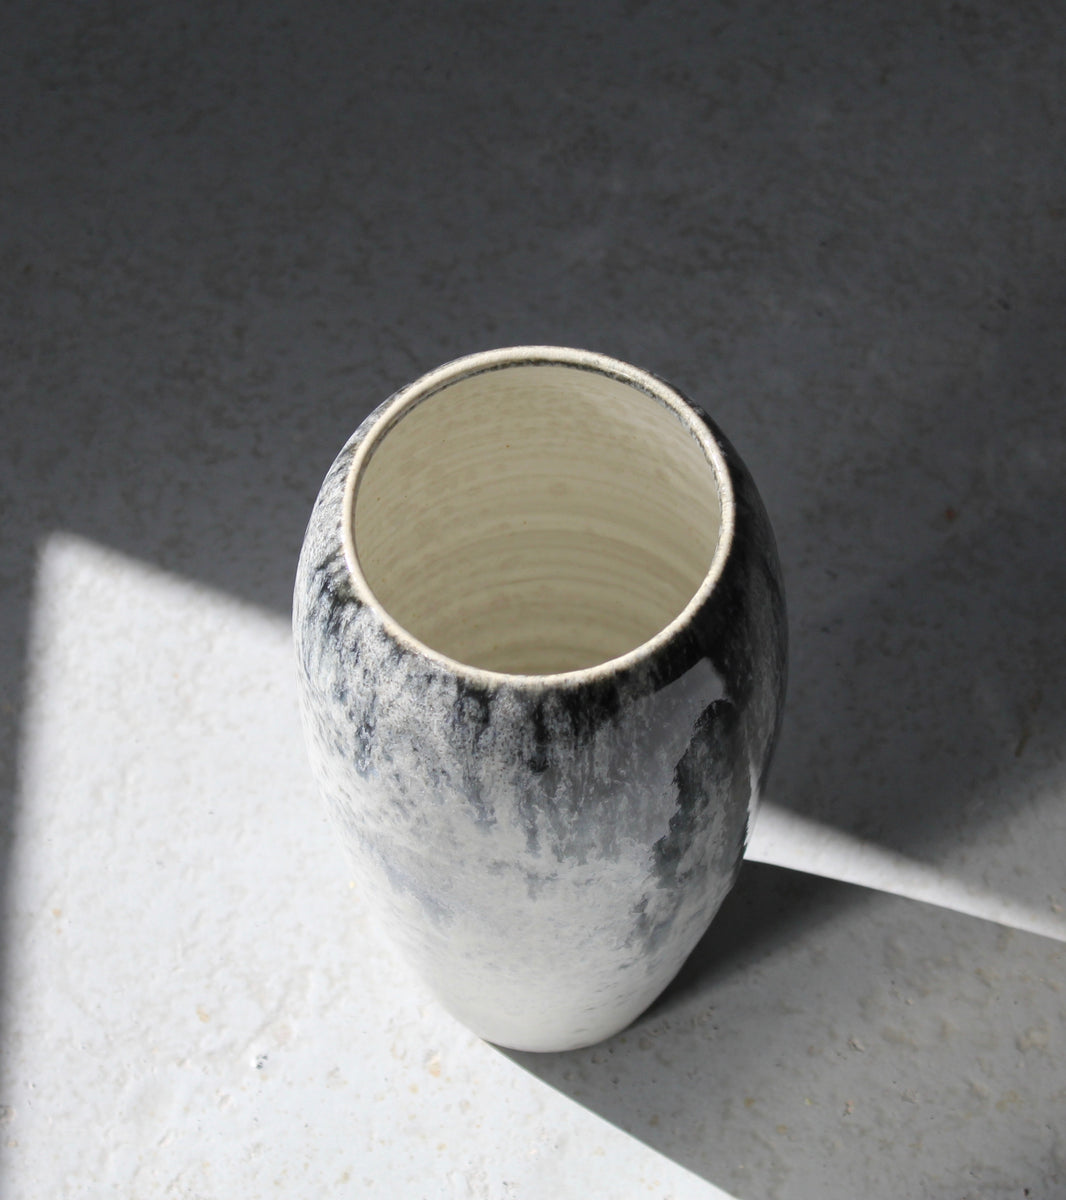 Broad-Shouldered Baluster Vase / Blue Glaze